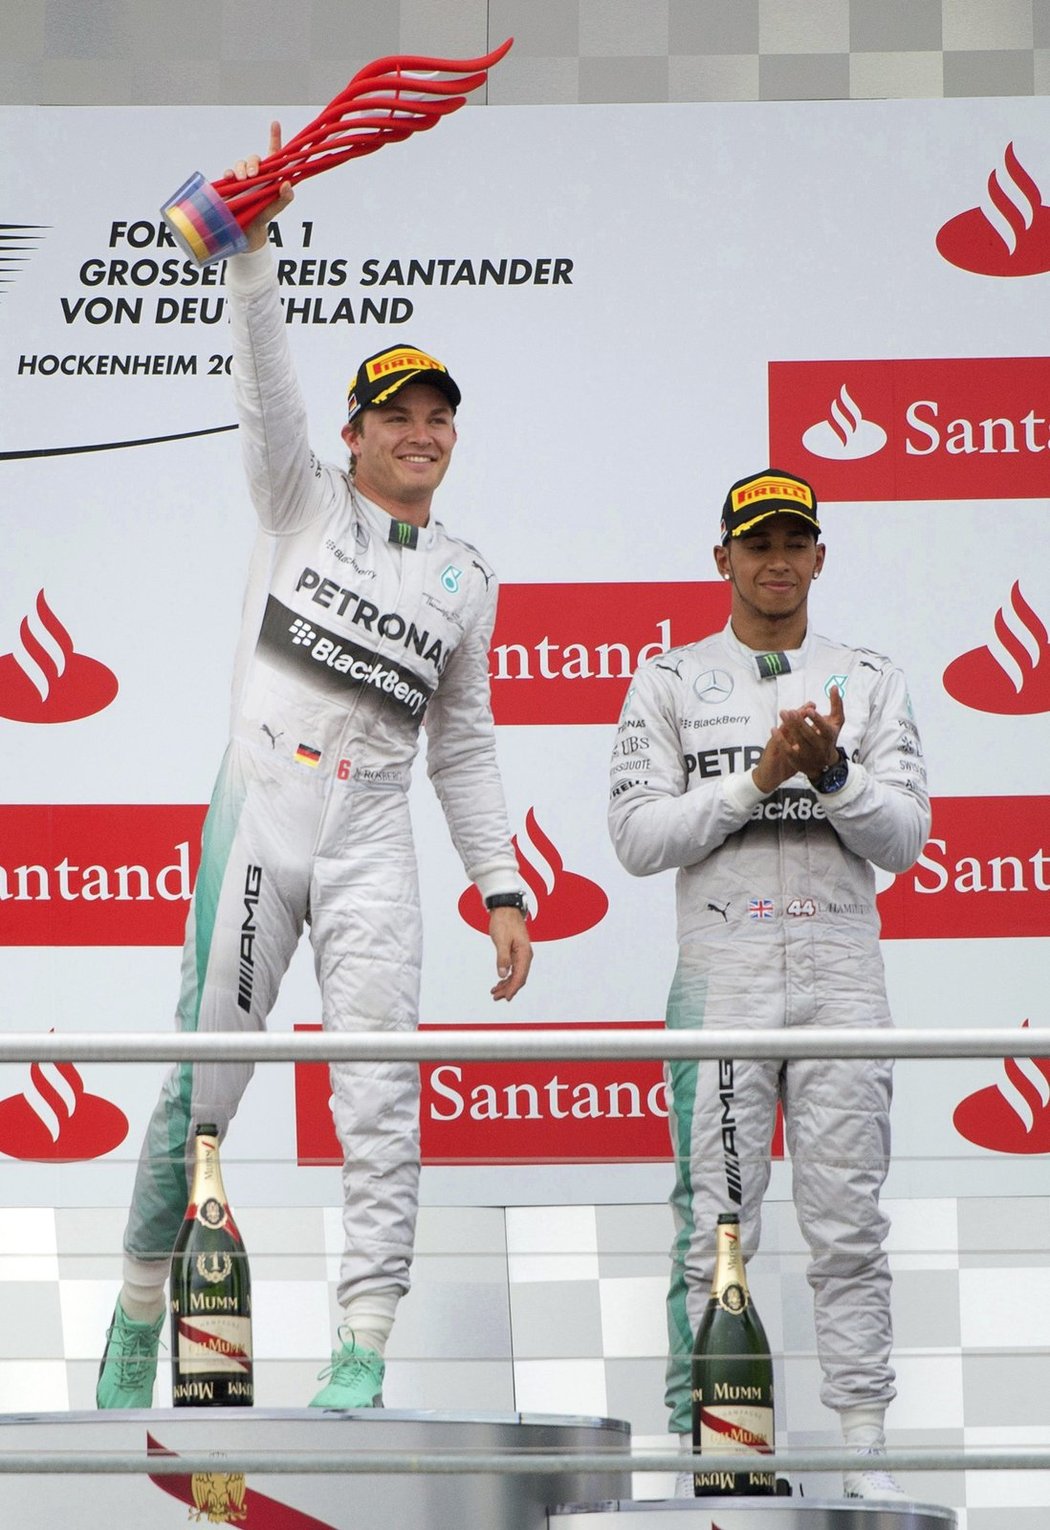 Německý pilot Nico Rosberg vyhrál domácí Velkou cenu formule 1 na Hockenheimringu a upevnil si vedení v mistrovství světa. Jeho britský týmový kolega Lewis Hamilton po startu až z 20. místa skončil třetí, double Mercedesu znemožnil Fin Valtteri Bottas z Williamsu.